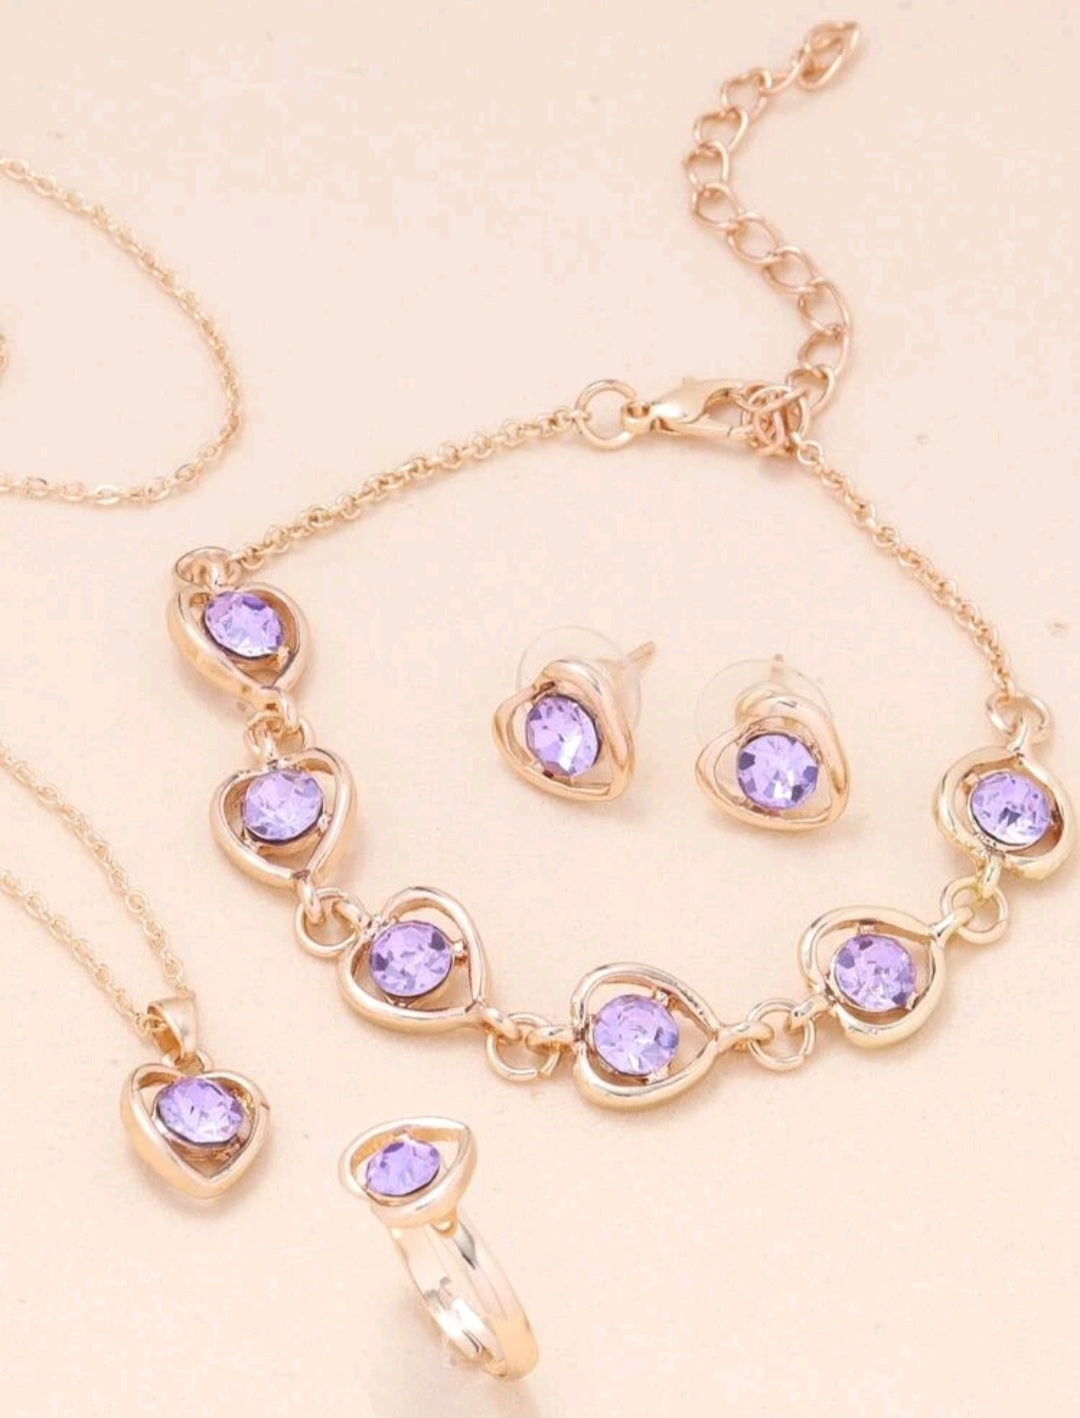 Handmade Gemstone Jewellery Sets{Necklace, Earrings&Ring}~ Set di gioielli fatti a mano con pietre preziose ~ collana, orecchini&anello - SANDY'S MAKEUP AND ARTISTRY 